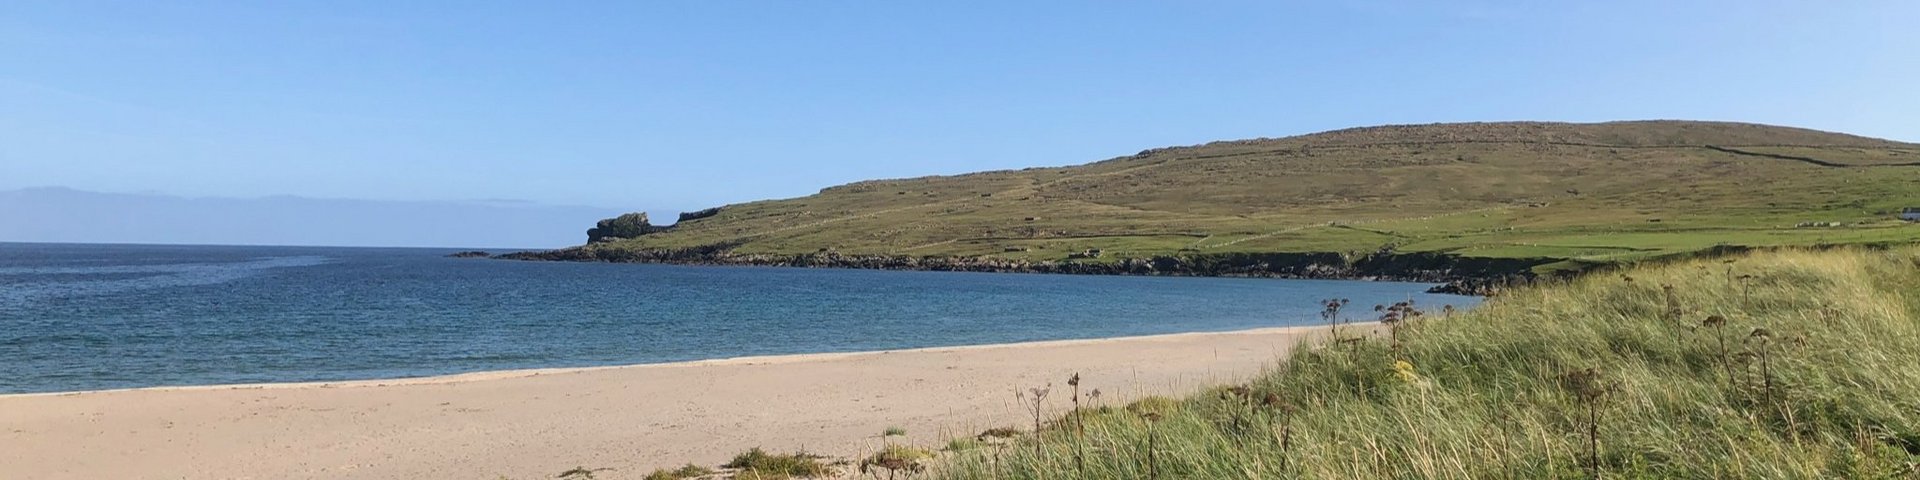 Strand auf den Shetland Inseln